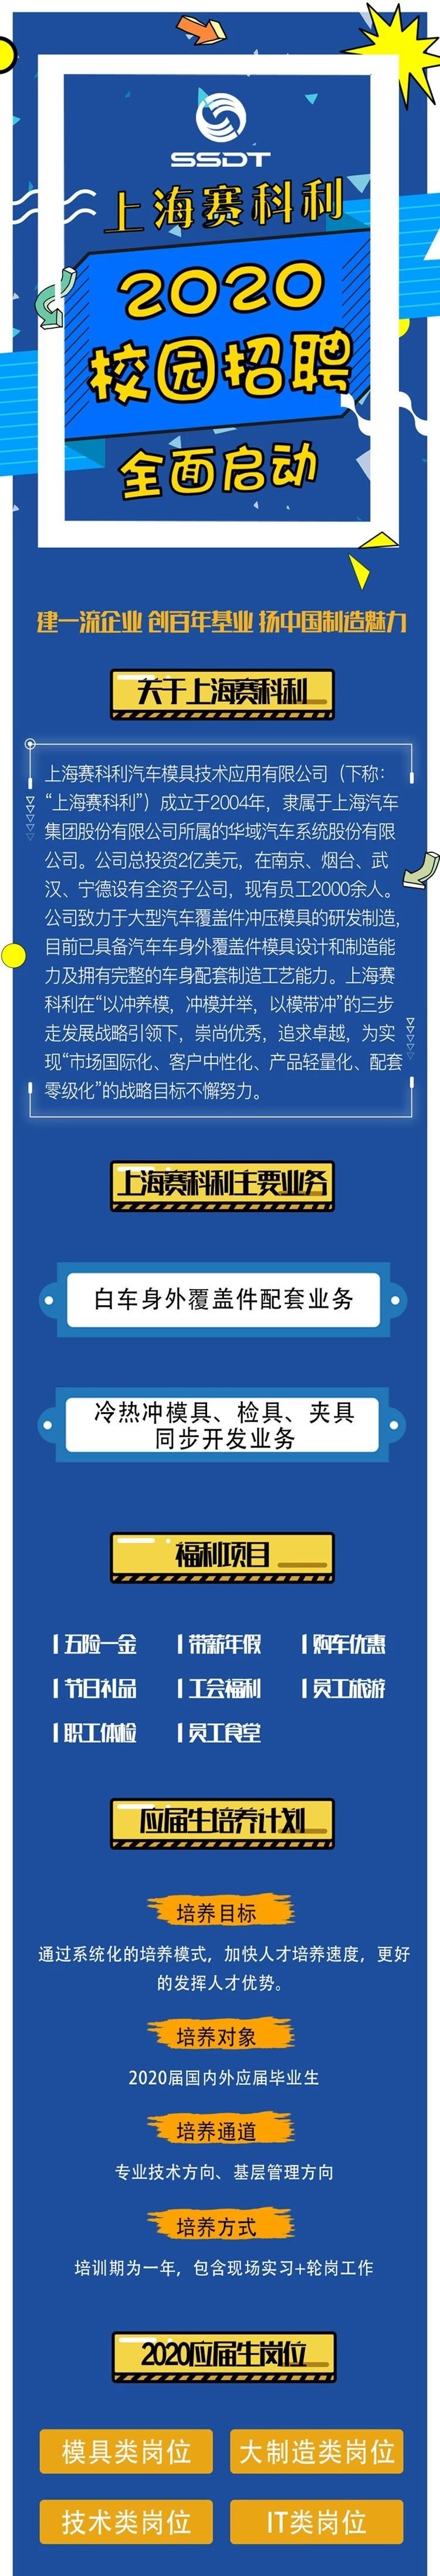 【陕西IT培训】上海赛科利2020校园招聘全面启动